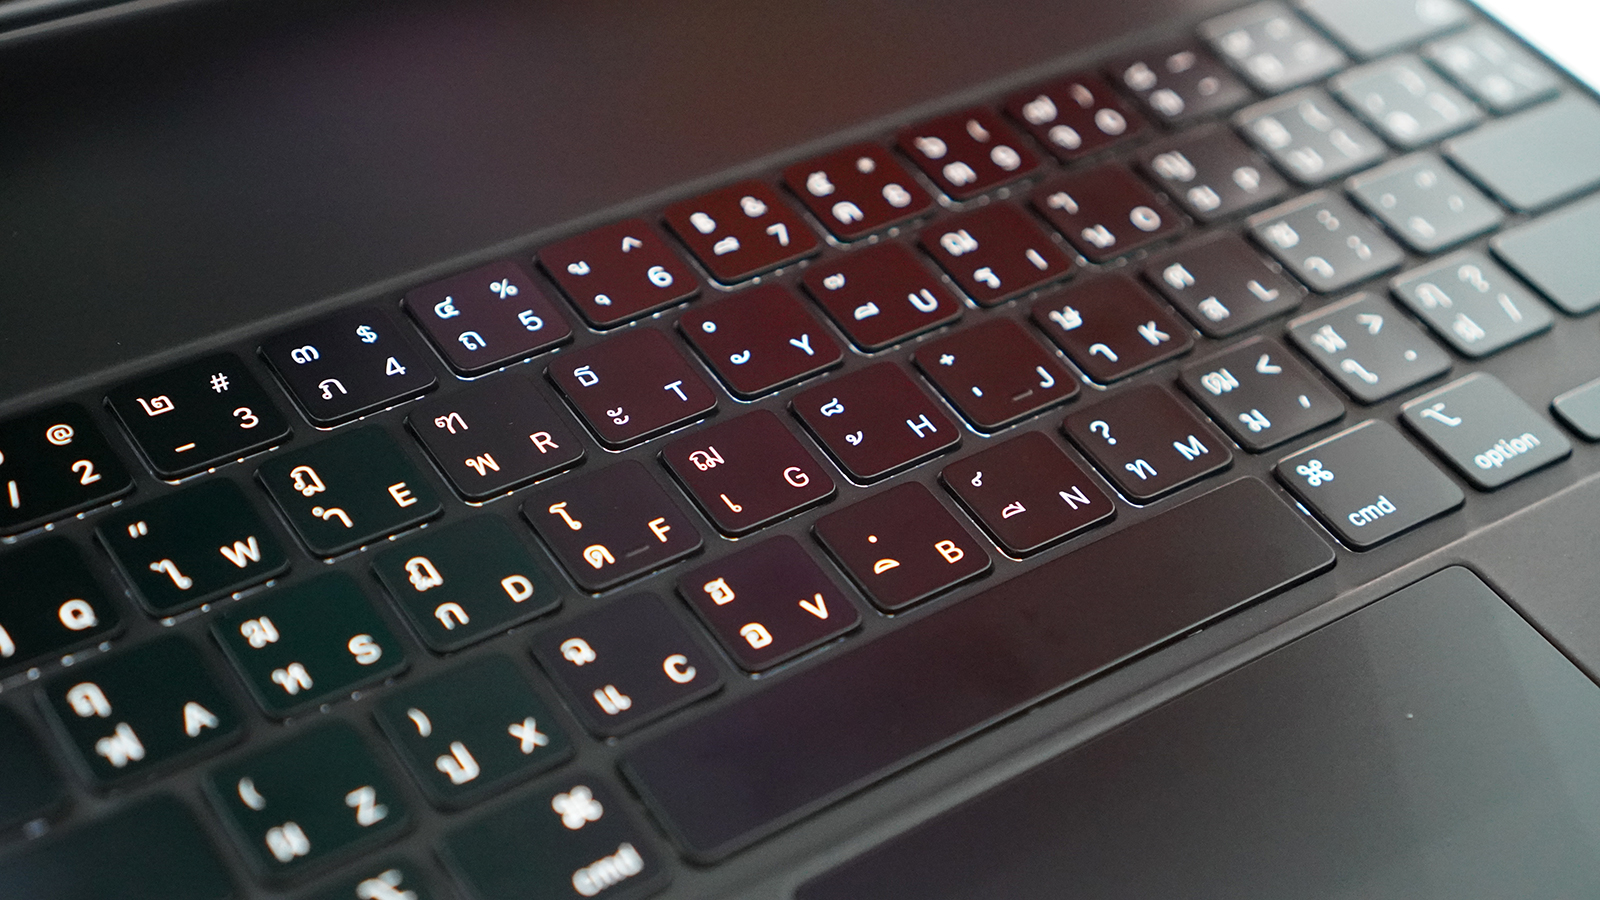 รีวิว Magic Keyboard อุปกรณ์เสริมเพื่อเติมความโปรให้กับ iPad Pro รุ่น 12.9 นิ้ว มาพร้อม Trackpad และไฟใต้ปุ่มคีย์บอร์ด